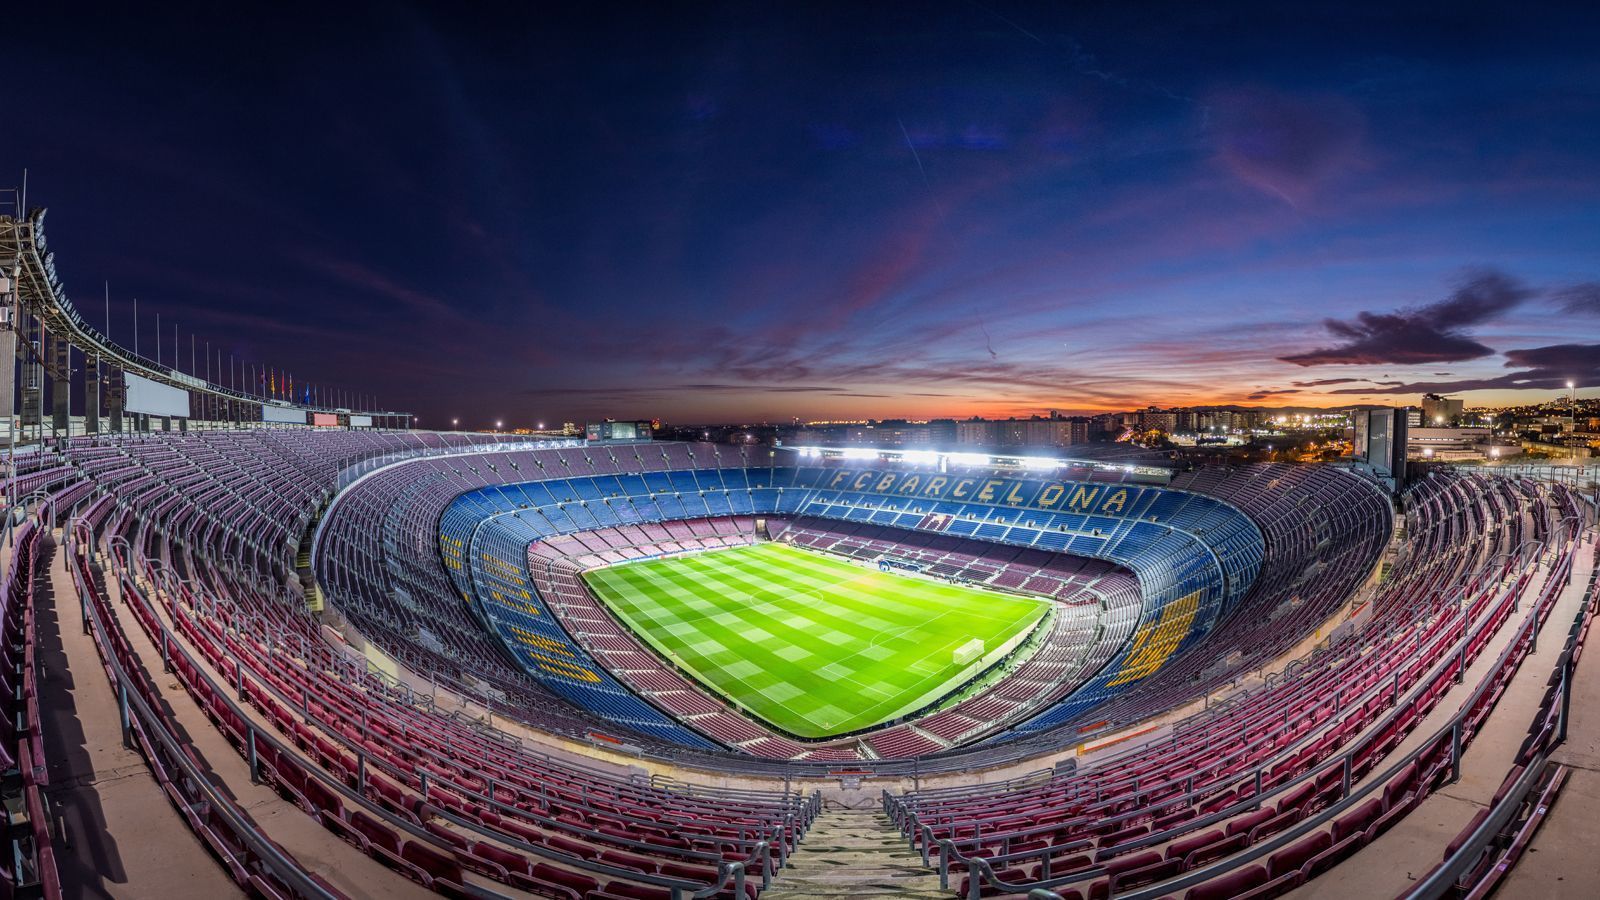 
                <strong>Camp Nou (Barcelona)</strong><br>
                Das derzeit größte Fußballstadion Europas steht in Barcelona und zwar direkt in der Stadtmitte. Das Camp Nou, Heimstätte des FC Barcelona, bietet bei nationalen Spielen über 99.000 Zuschauern Platz. Bei internationalen Begegnungen wird das Zuschauer-Limit aus Sicherheitsgründen auf 96.636 Fans beschränkt. Gebaut wurde das Camp Nou während der Franco-Diktatur und 1957 (nach dreijähriger Bauzeit) eröffnet. Derzeit wird das Stadion umgebaut, sodass nach Abschluss dieser Arbeiten etwa 105.000 Fans ins Camp Nou passen. Aufgrund der Corona-Pandemie dürfte sich die Fertigstellung allerdings um ein Jahr auf 2025 verzögern. Im Rahmen der Umbauarbeiten soll das Stadion komplett überdacht werden.
              